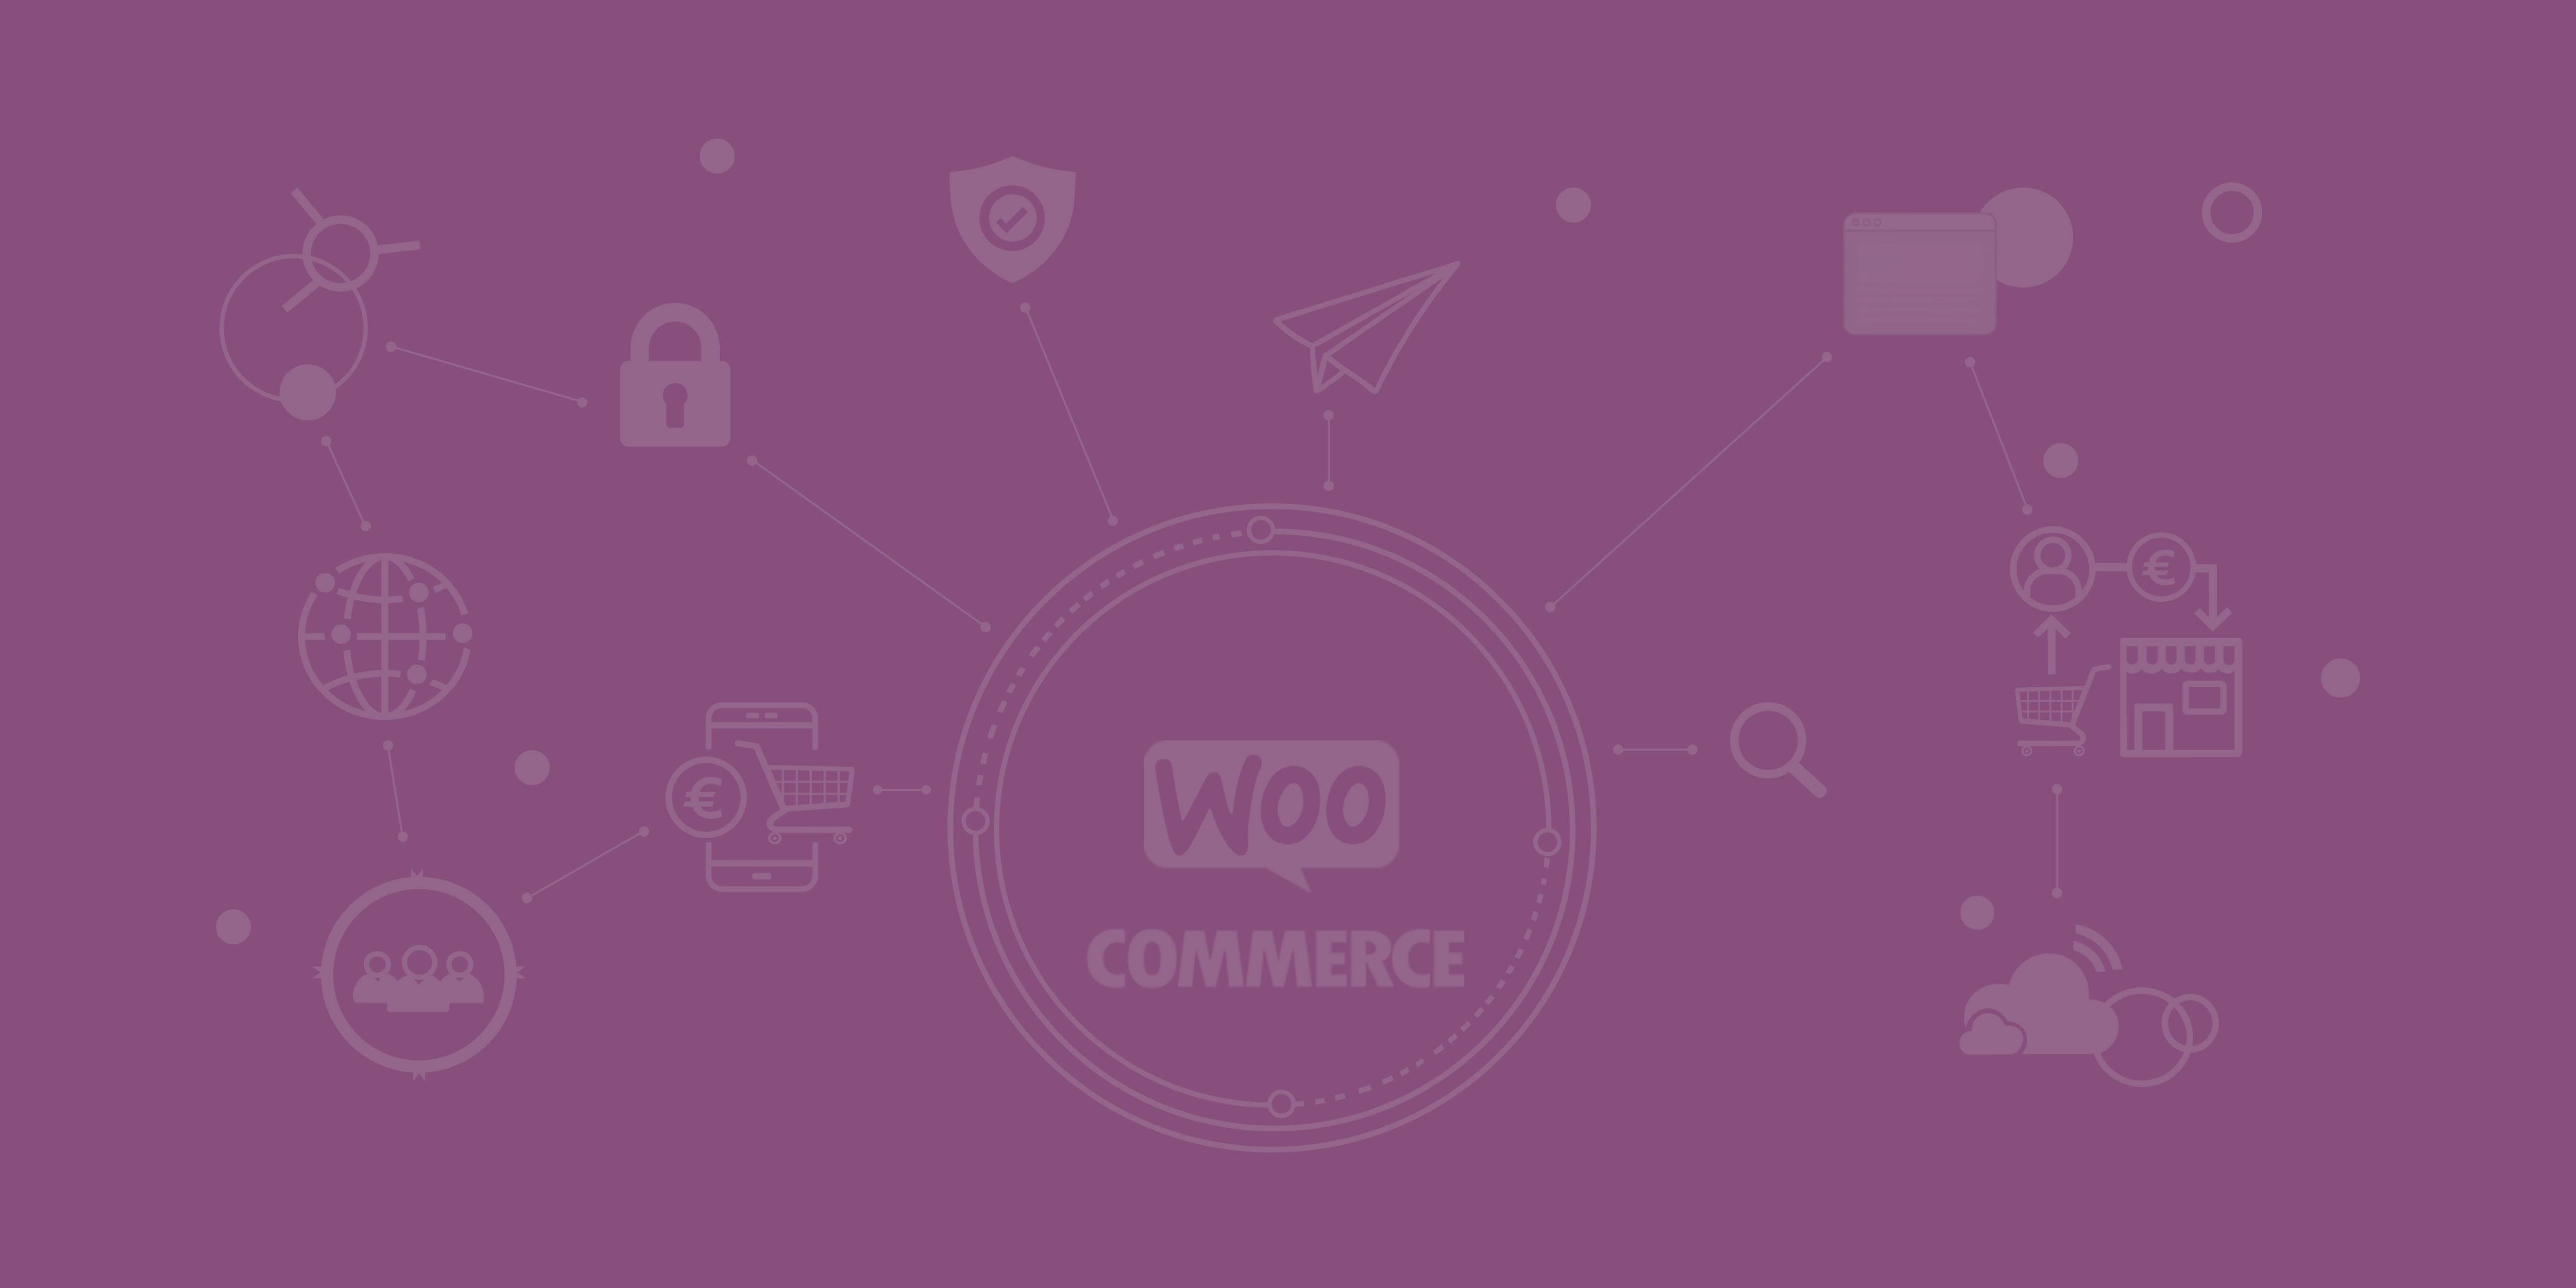 Das Logo von WooCommerce und die Angebotenen Dienstleistungen der WooCommerce Agentur in Form von Icons